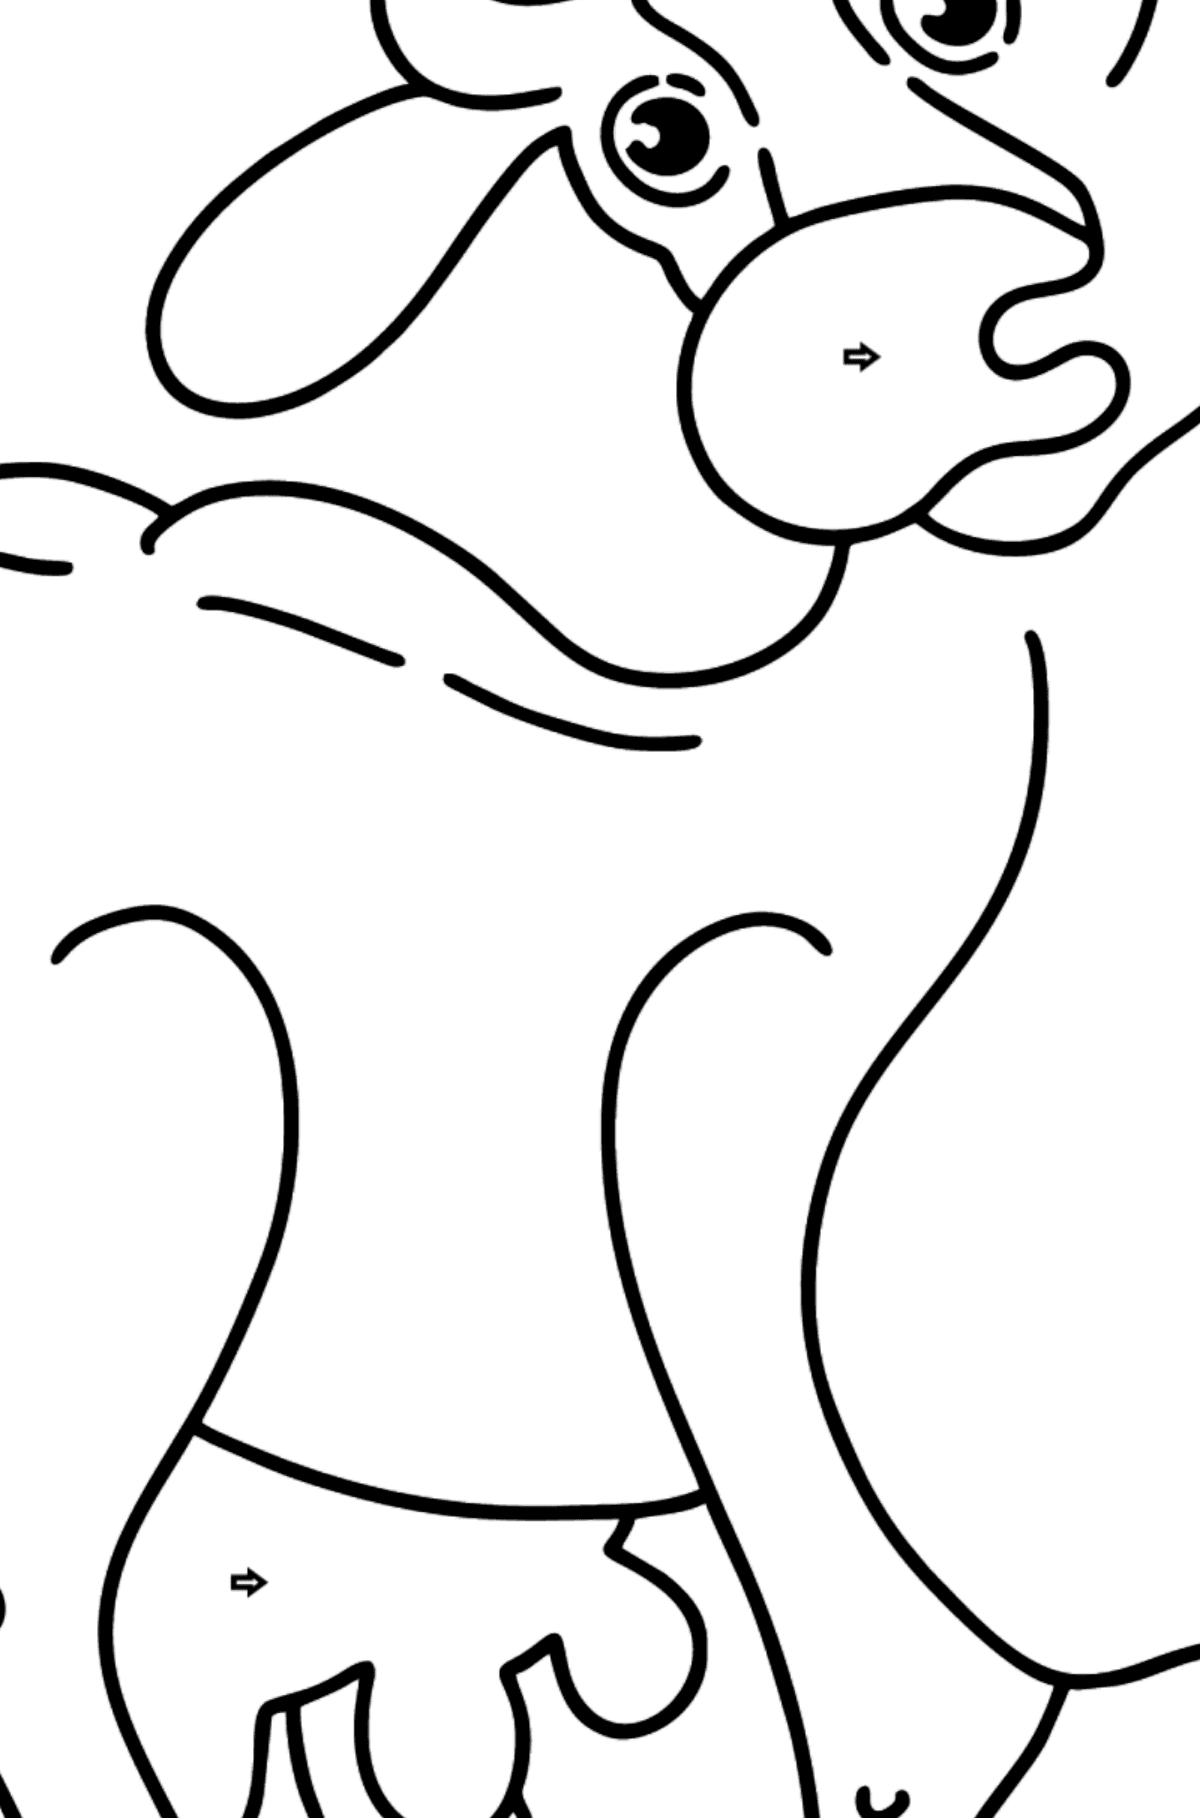 Раскраска корова - Картинка высокого качества для Детей